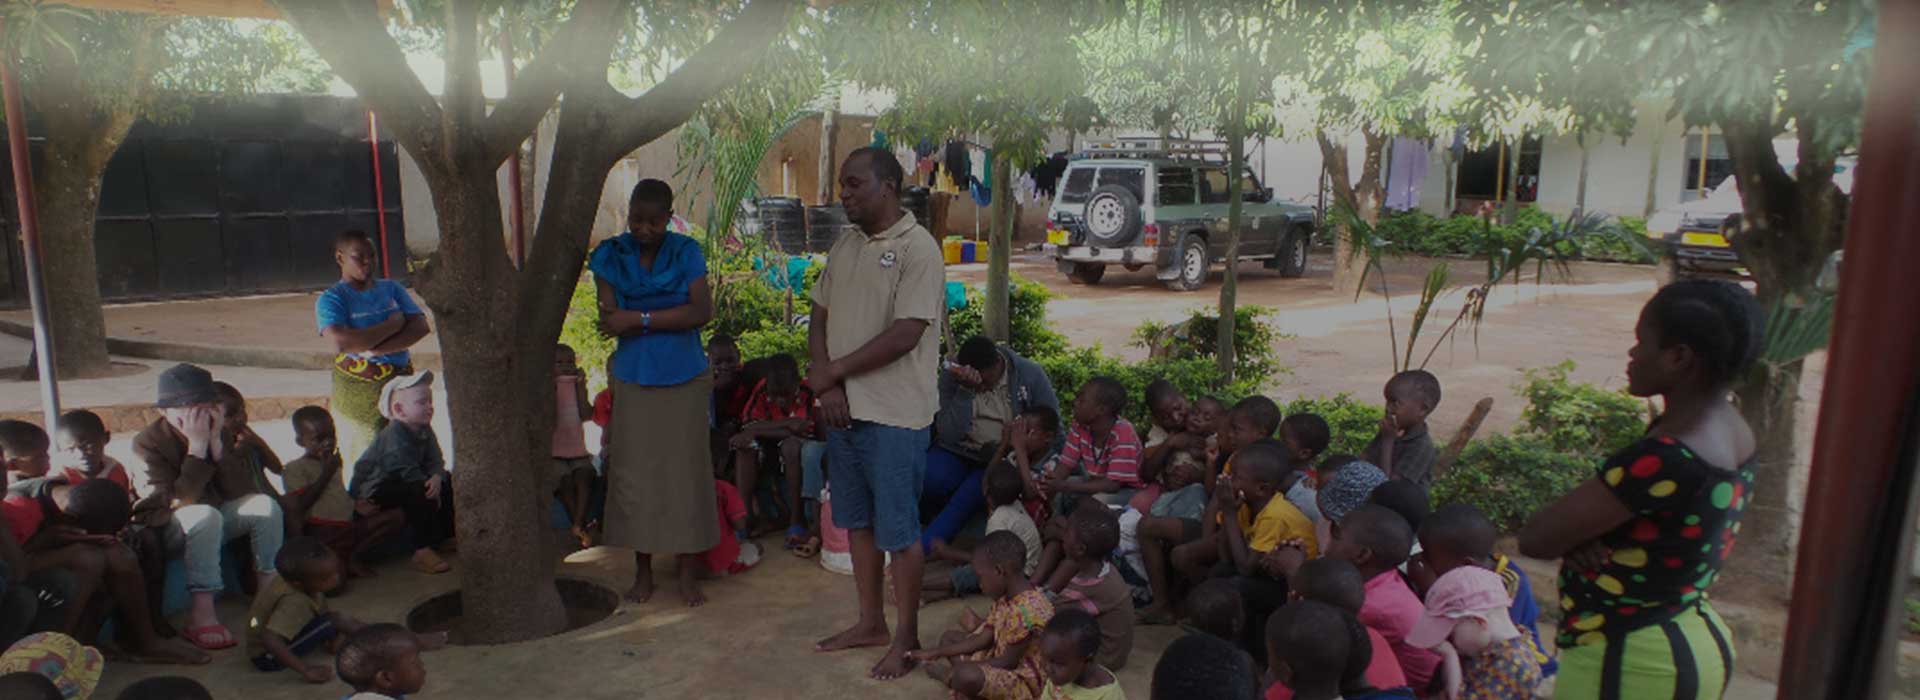 Tanzania Volunteering | Affordable Volunteer in Mwanza Tanzania